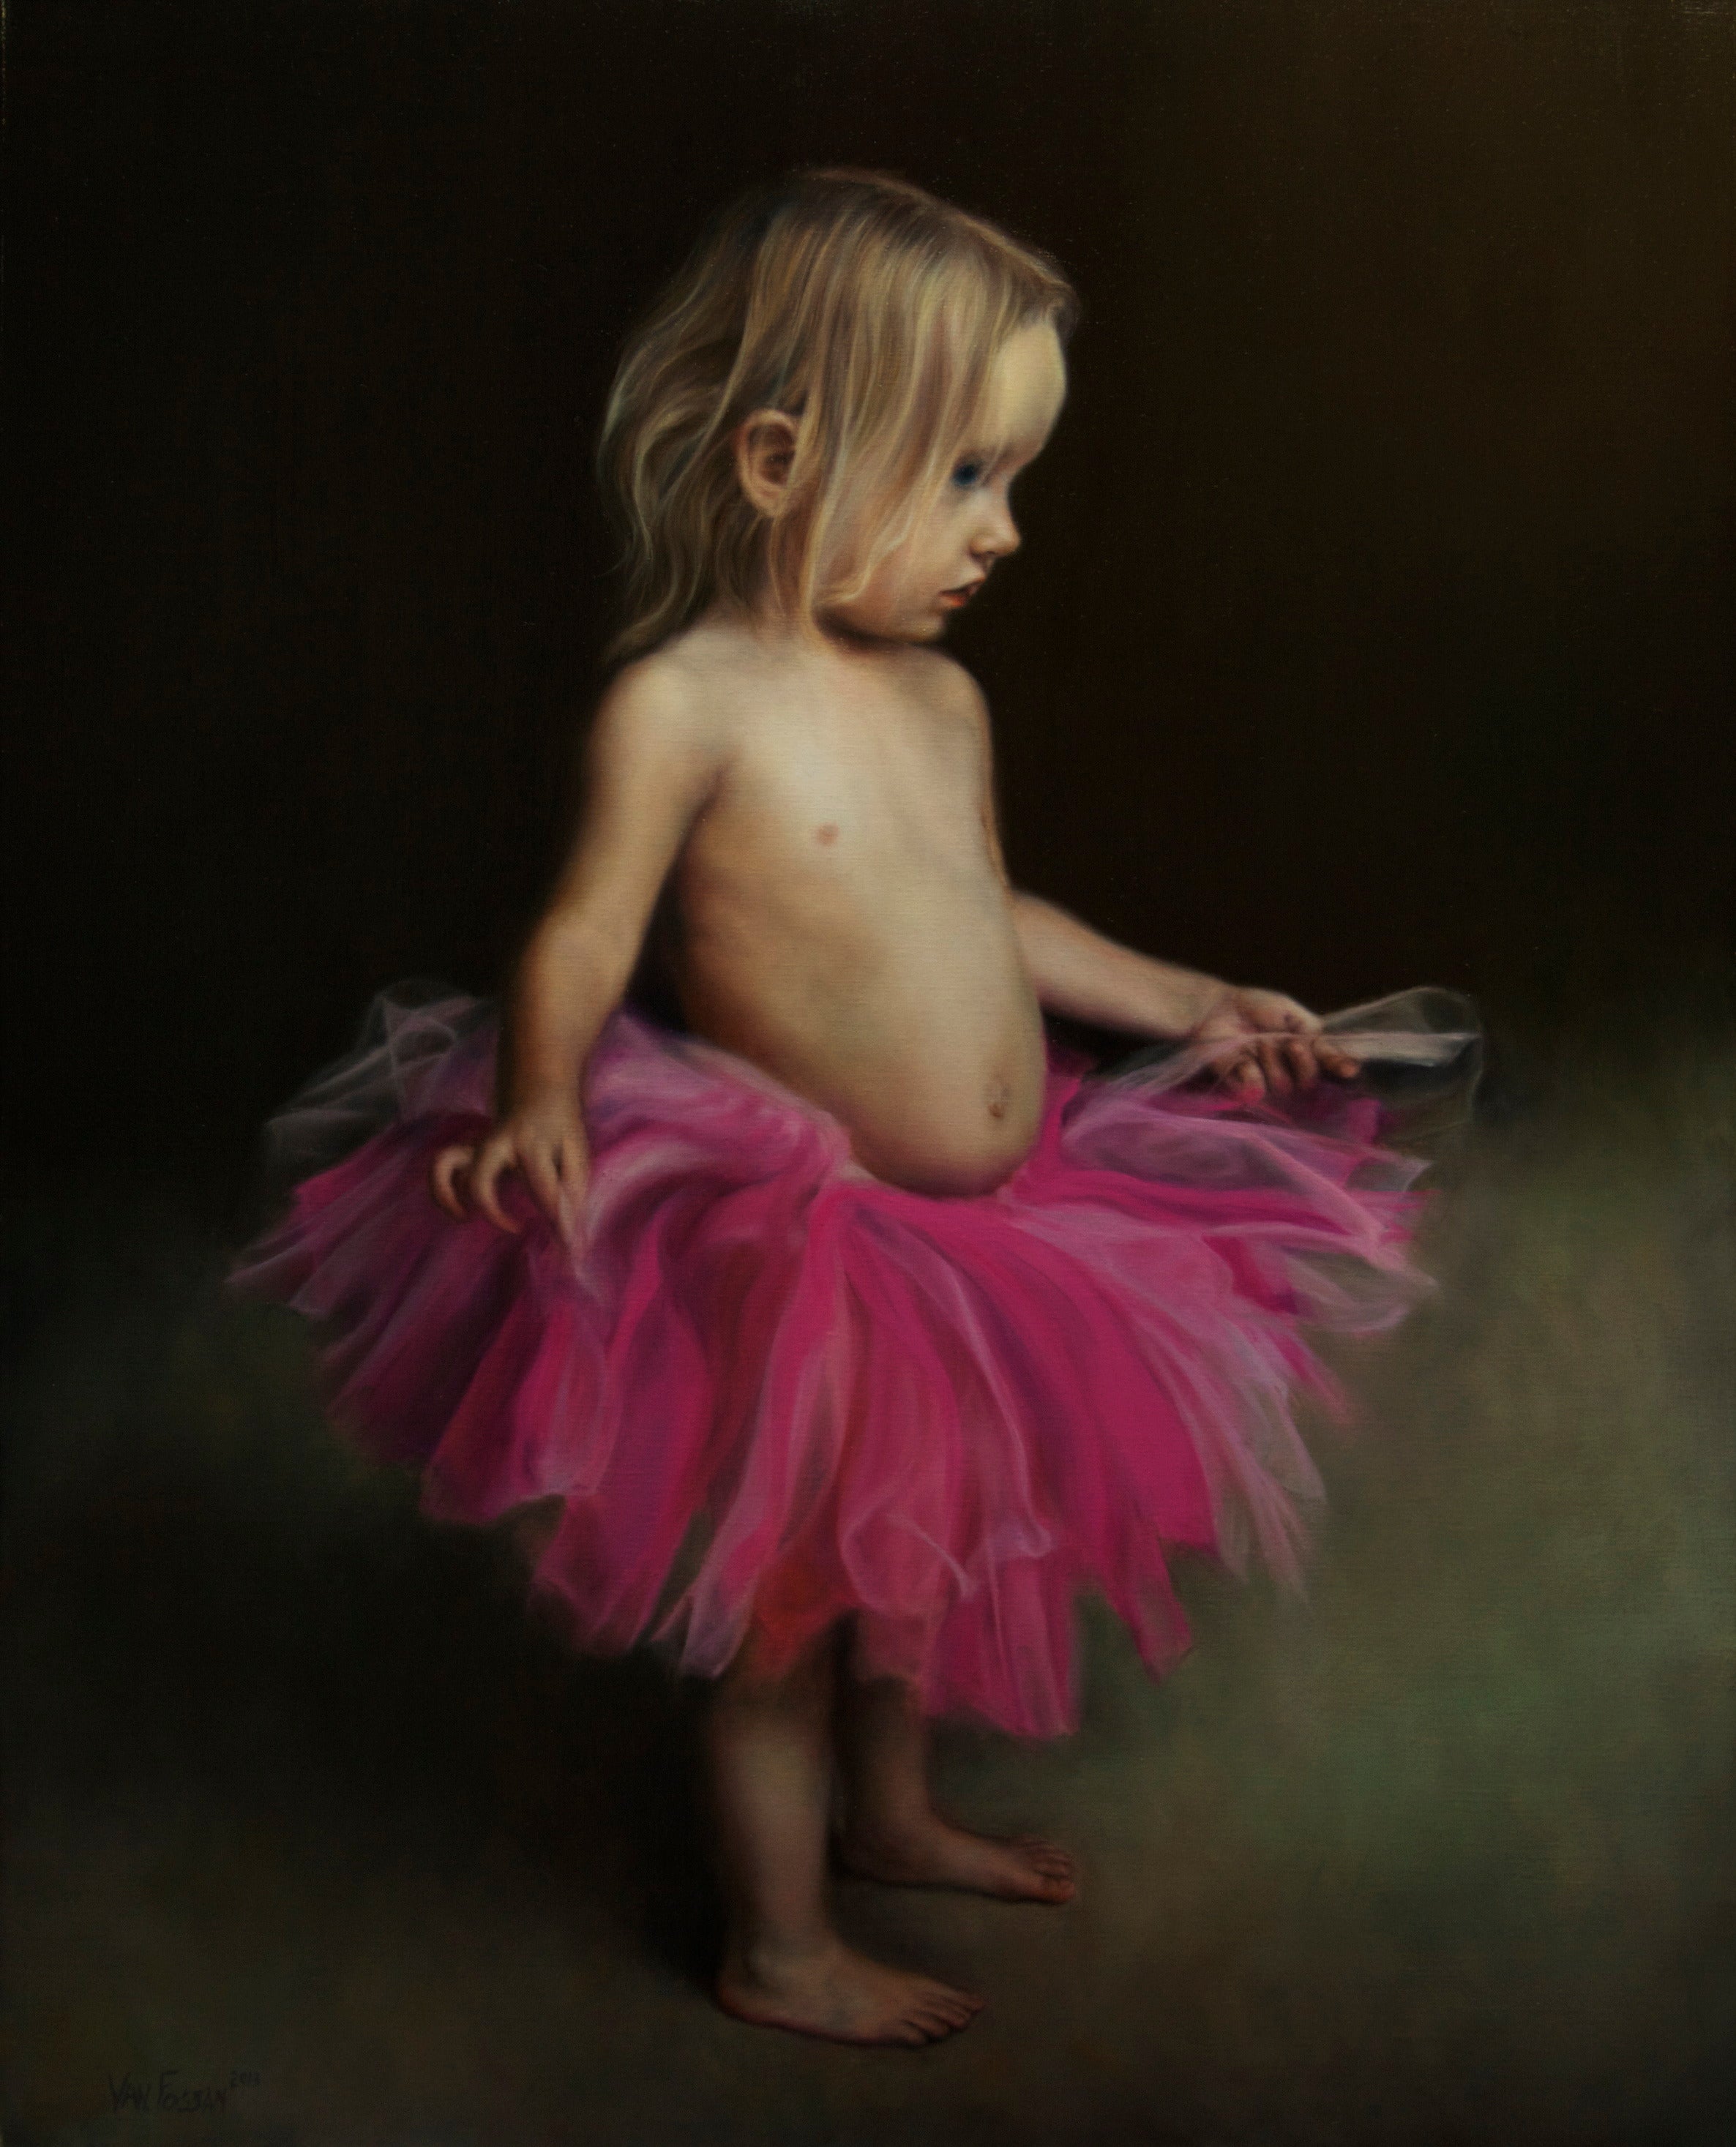 "Pink Tu Tu" by James Van Fossan